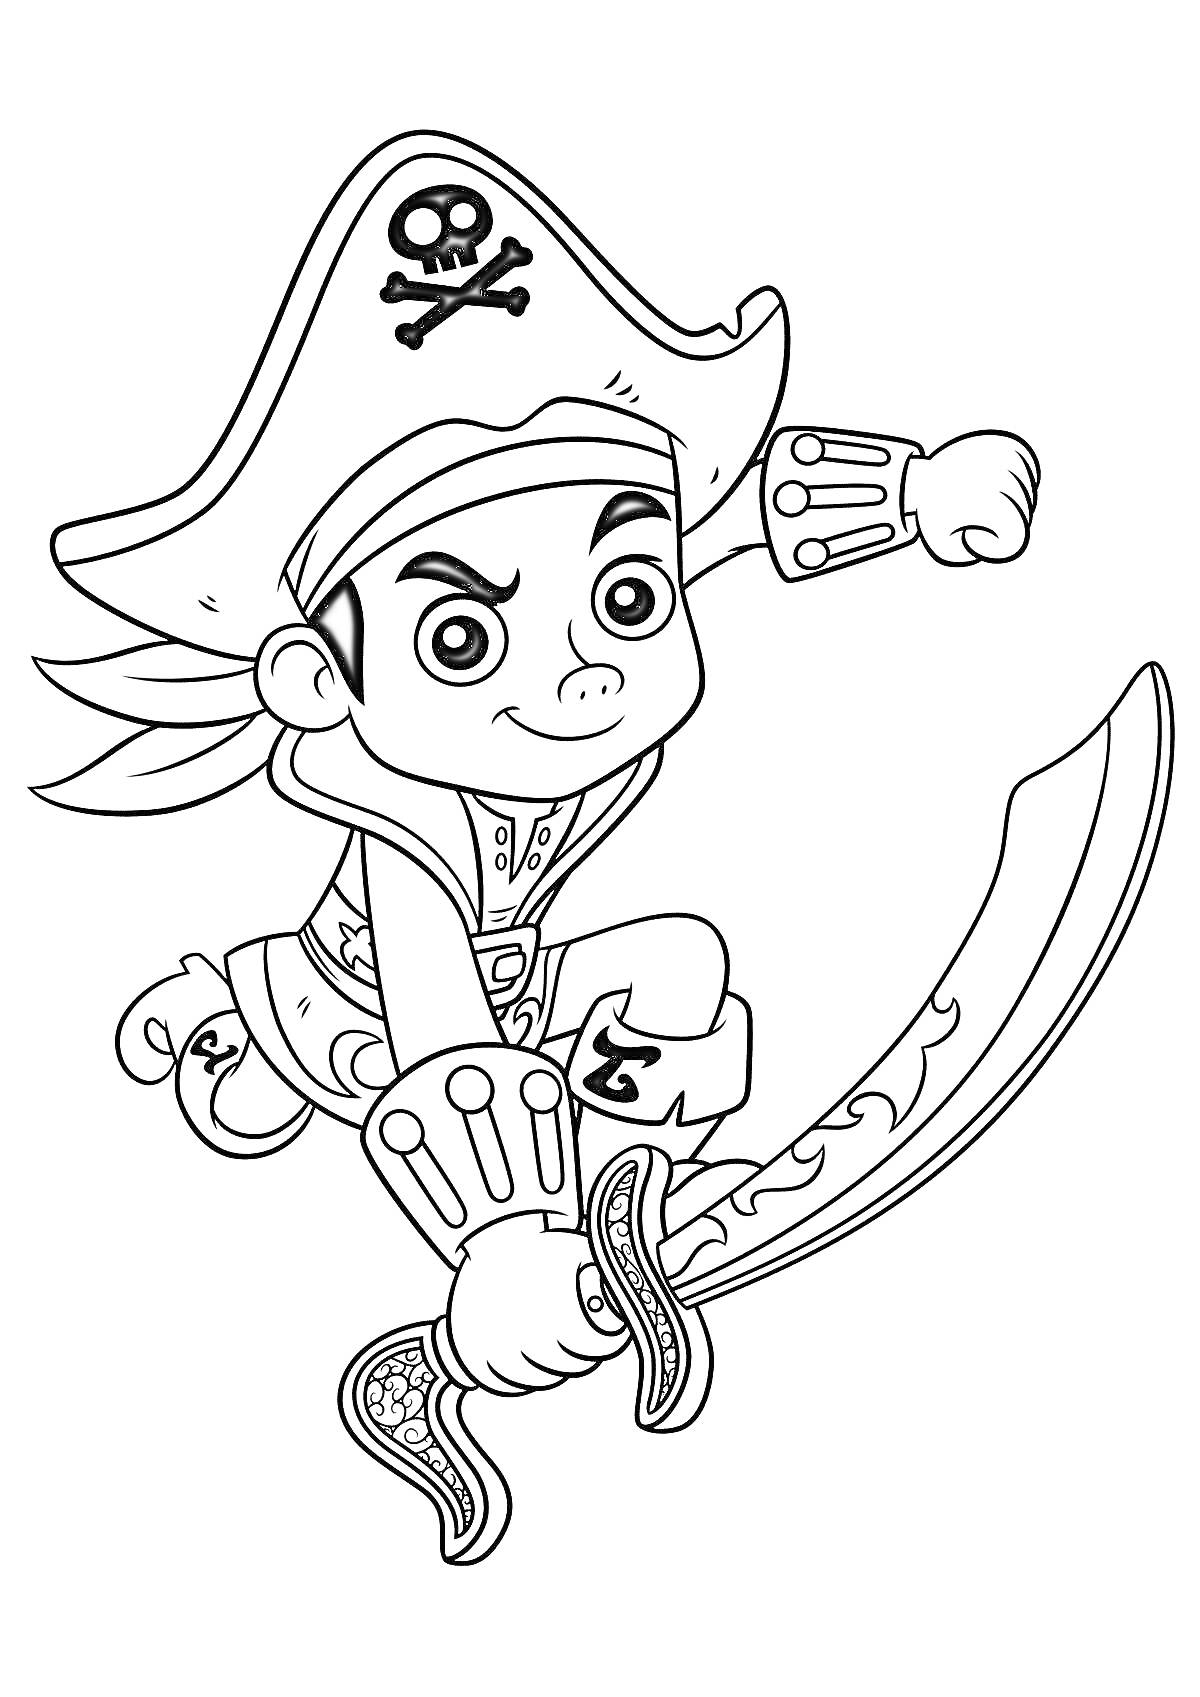 Пират в большом шляпе с черепом и костями, держащий изогнутую саблю и готовящийся к прыжку